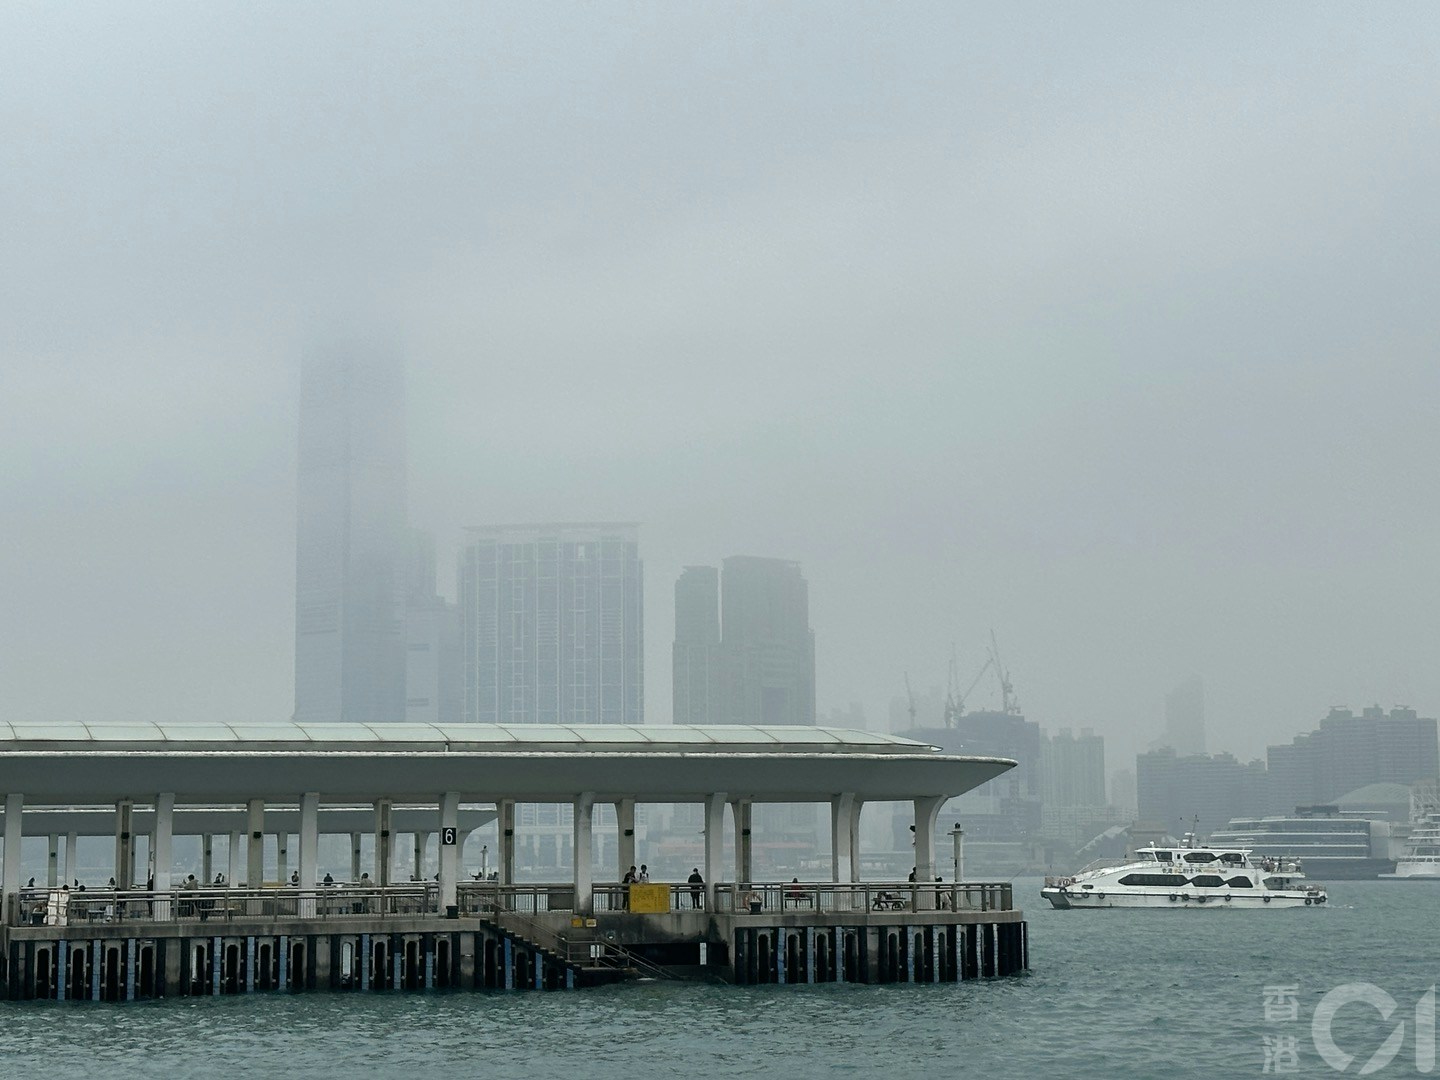 3月16日潮湿有雾，维港一片灰蒙蒙，在中环海滨望向对岸，可见部份大厦高层被云雾遮蔽。（倪清江摄）